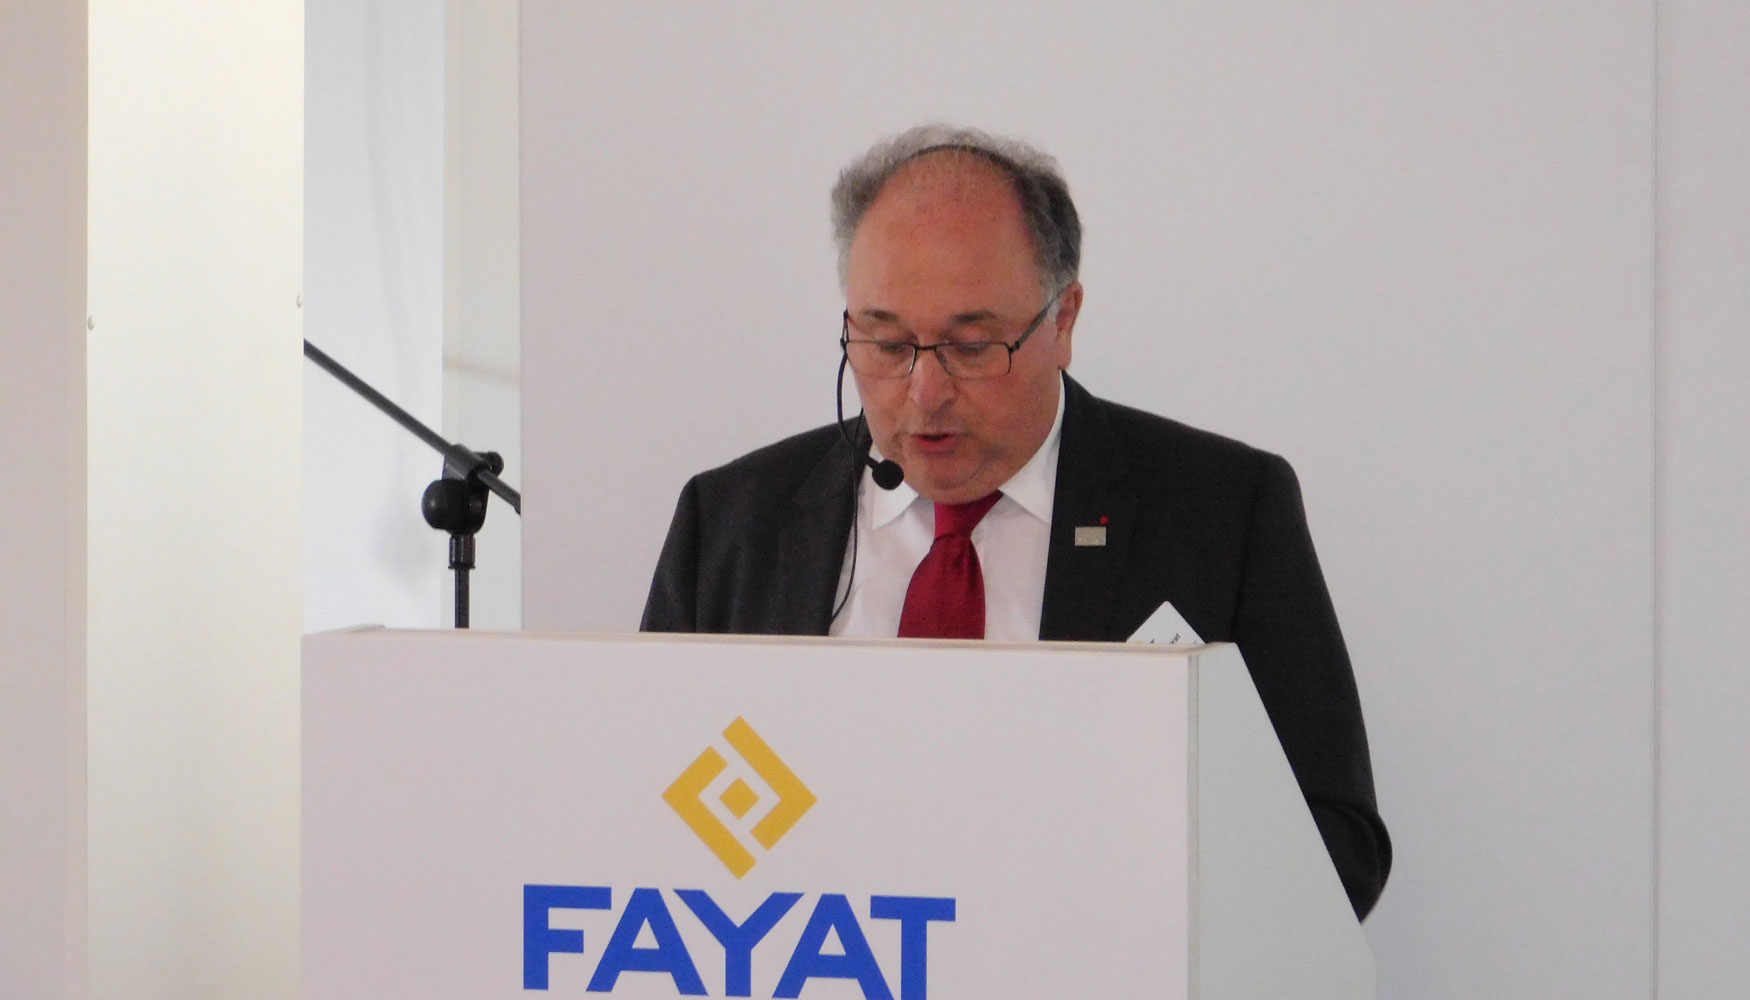 Jean-Claude Fayat, presidente del Grupo Fayat, durante la rueda de prensa